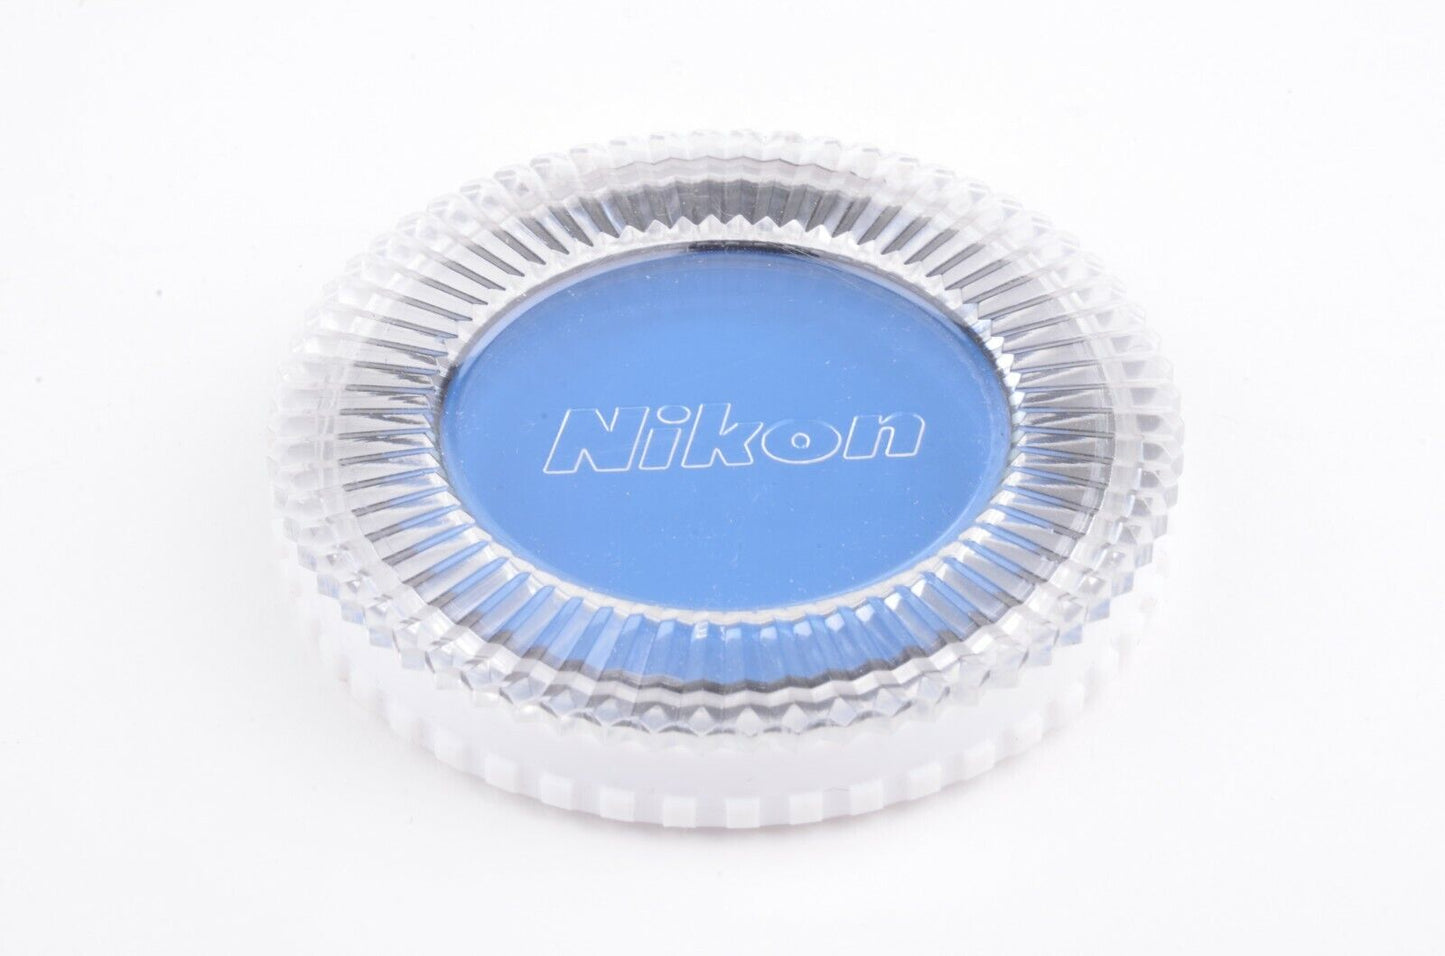 MINT- BOXED NIKON B8 BLUE 52mm FILTER IN JEWEL BOX